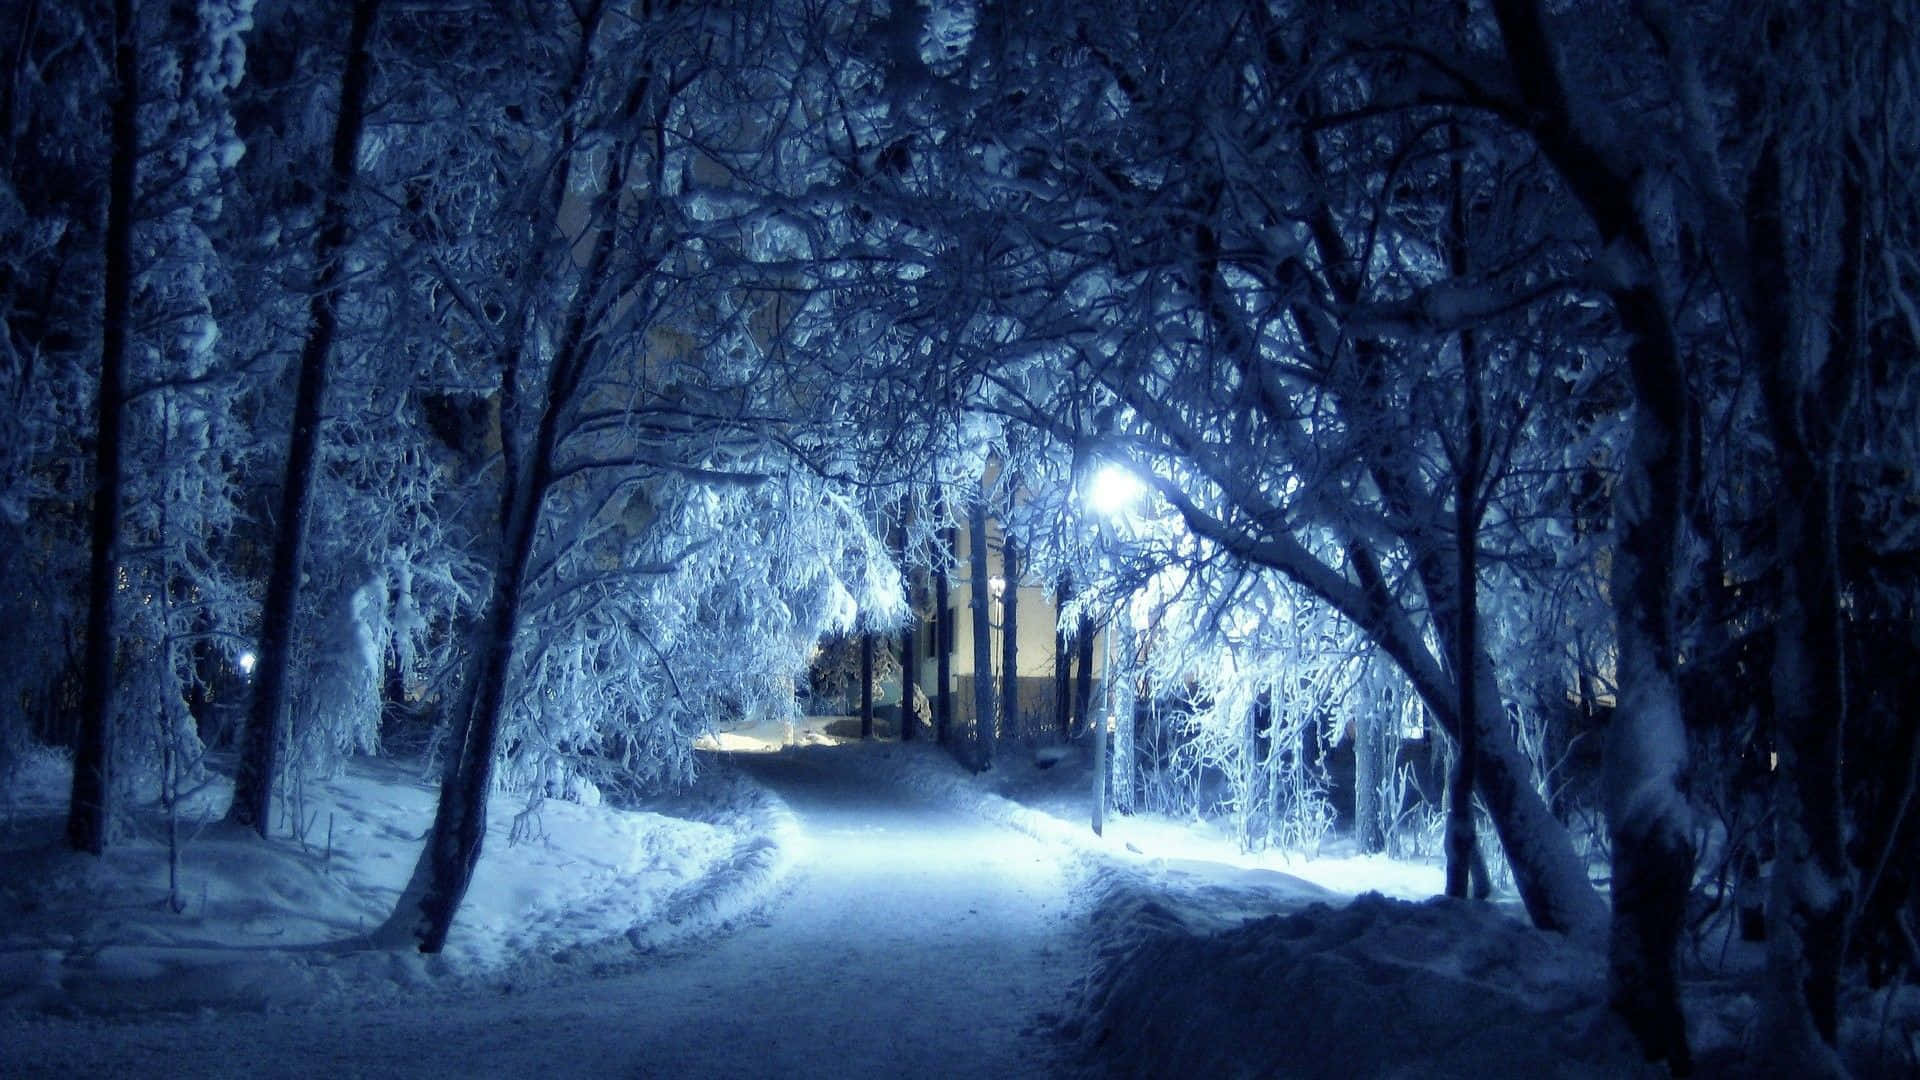 Goditila Neve Dell'inverno E Le Tonalità Di Blu In Questo Splendido Paesaggio Innevato